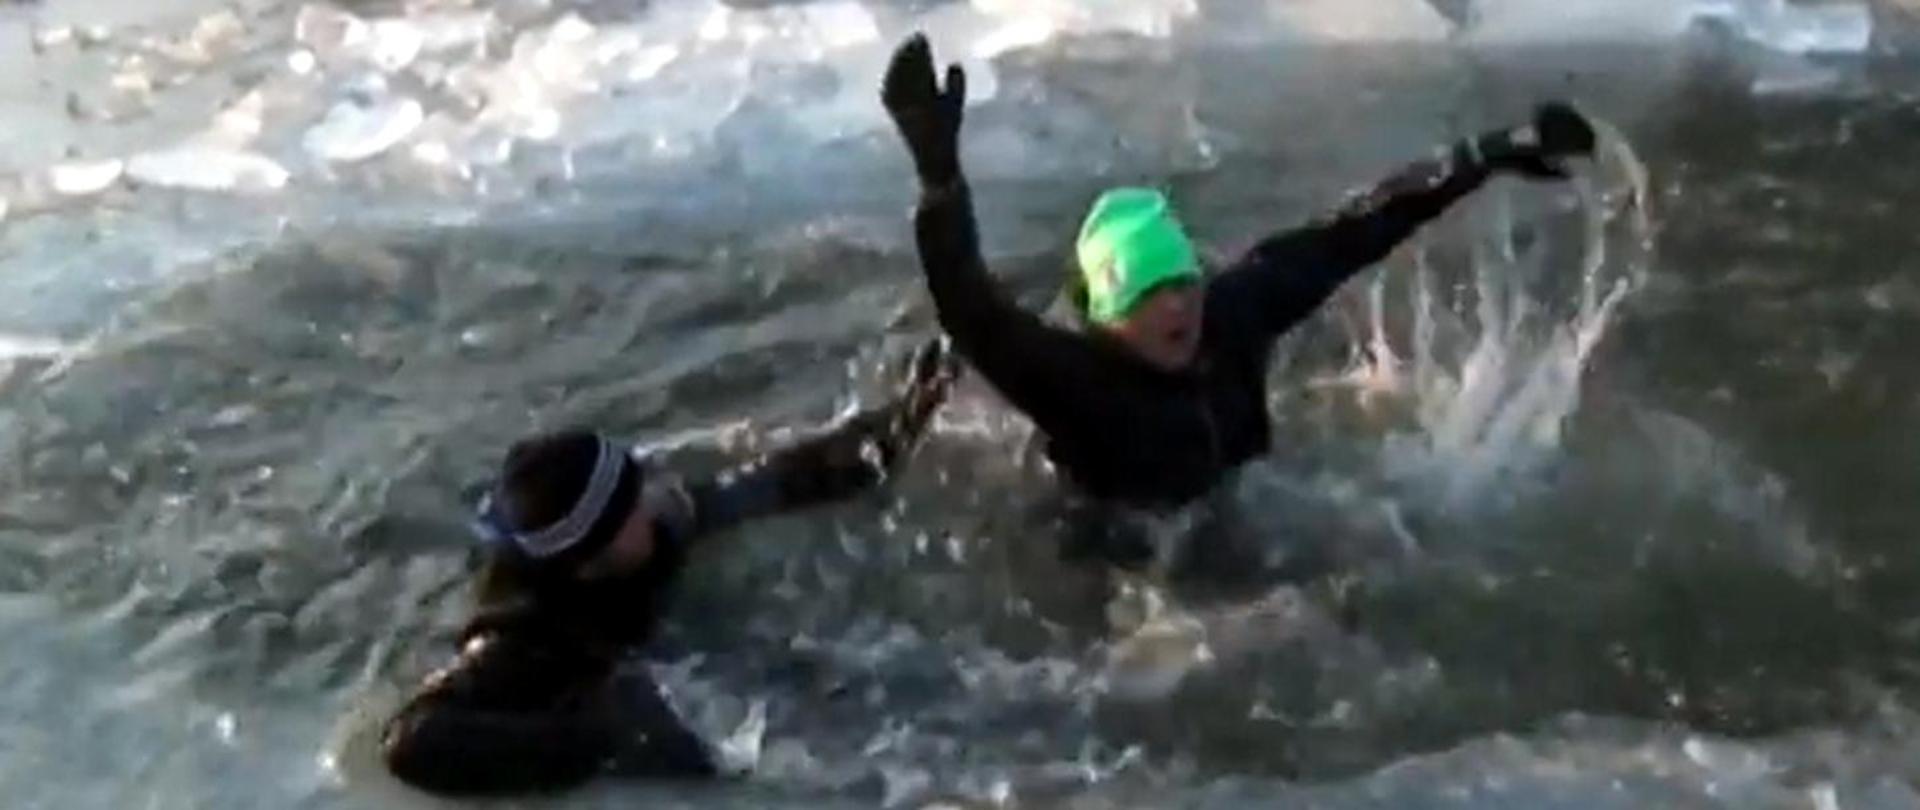 Zdjęcie przedstawia dwie osoby, pod którymi załamał się lód i wpadły do wody. Osoby próbują się ratować i wzywają pomocy